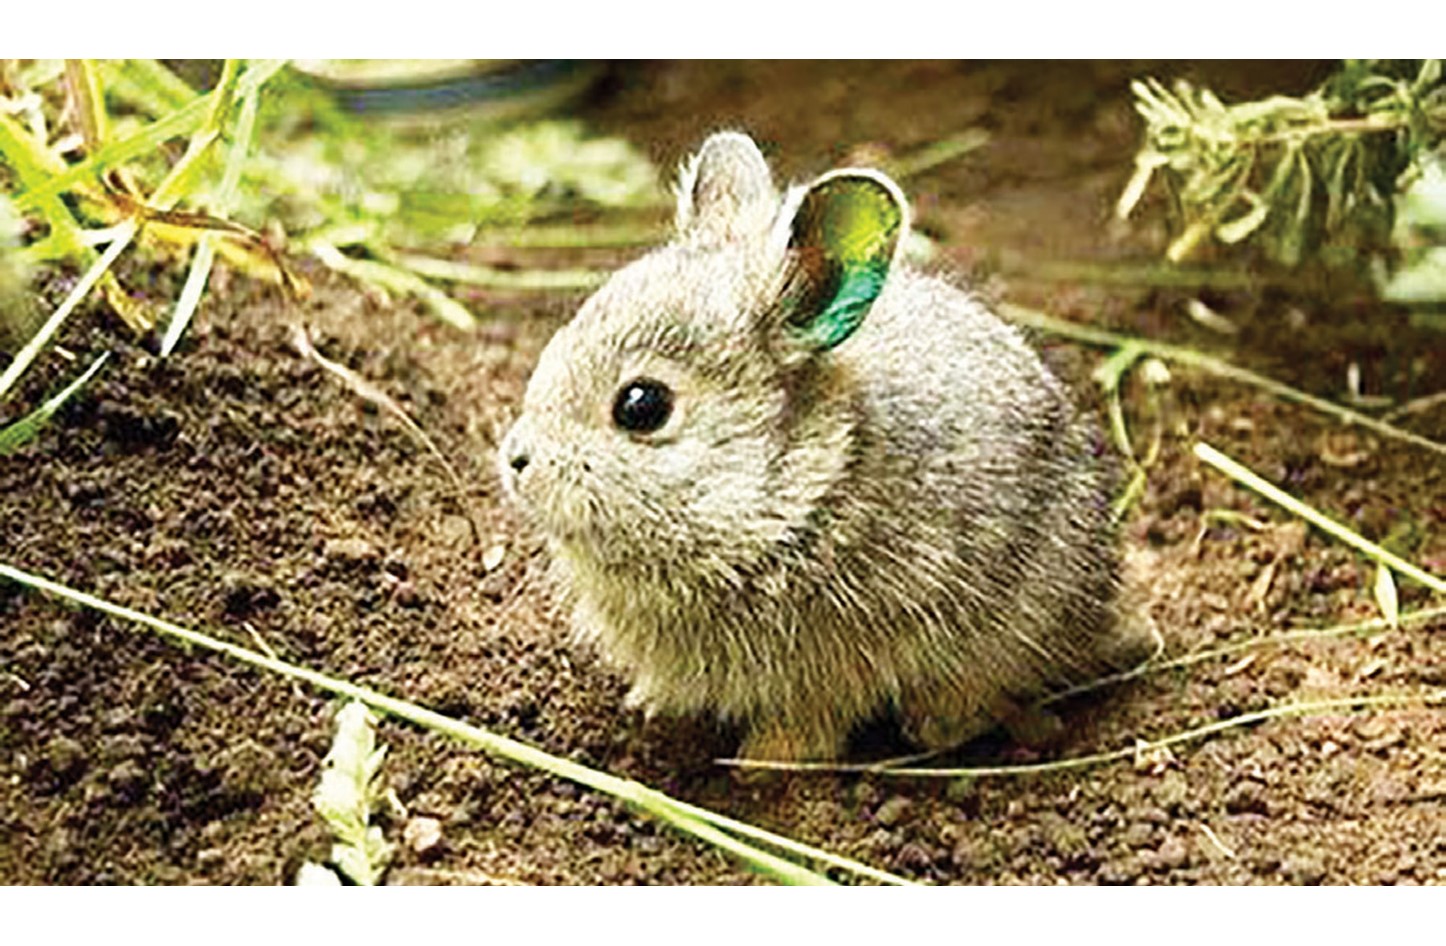 أصغر سلالة أرانب في العالم «بحجم كف اليد» - صحيفة الأيام البحرينية